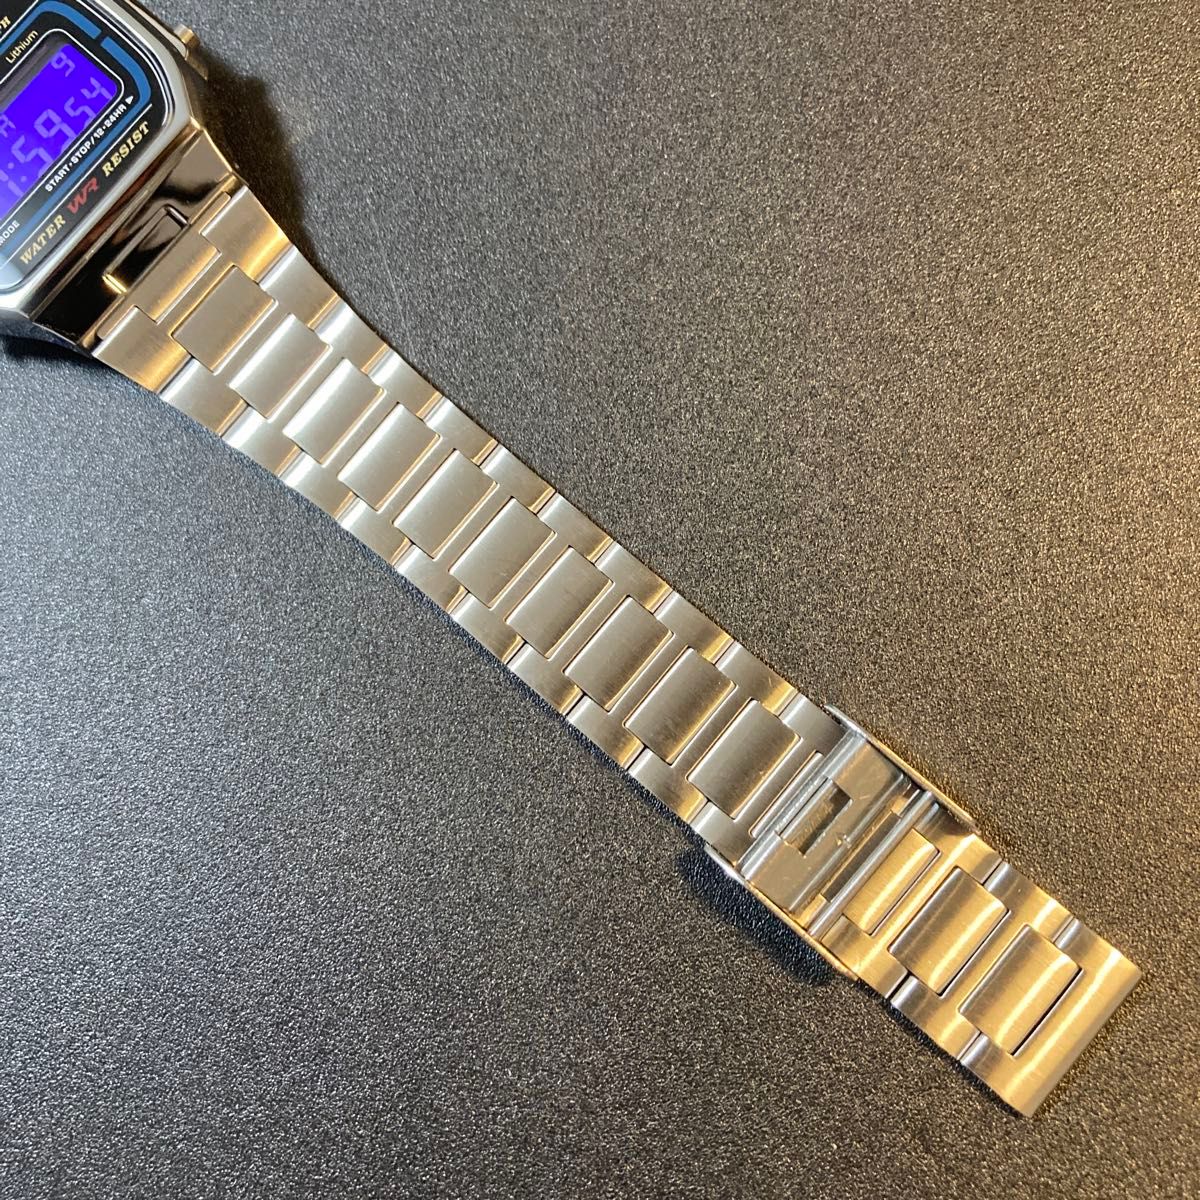 【新品】カシオ チープカシオ デジタル 腕時計 紫 液晶反転 レトロ 調